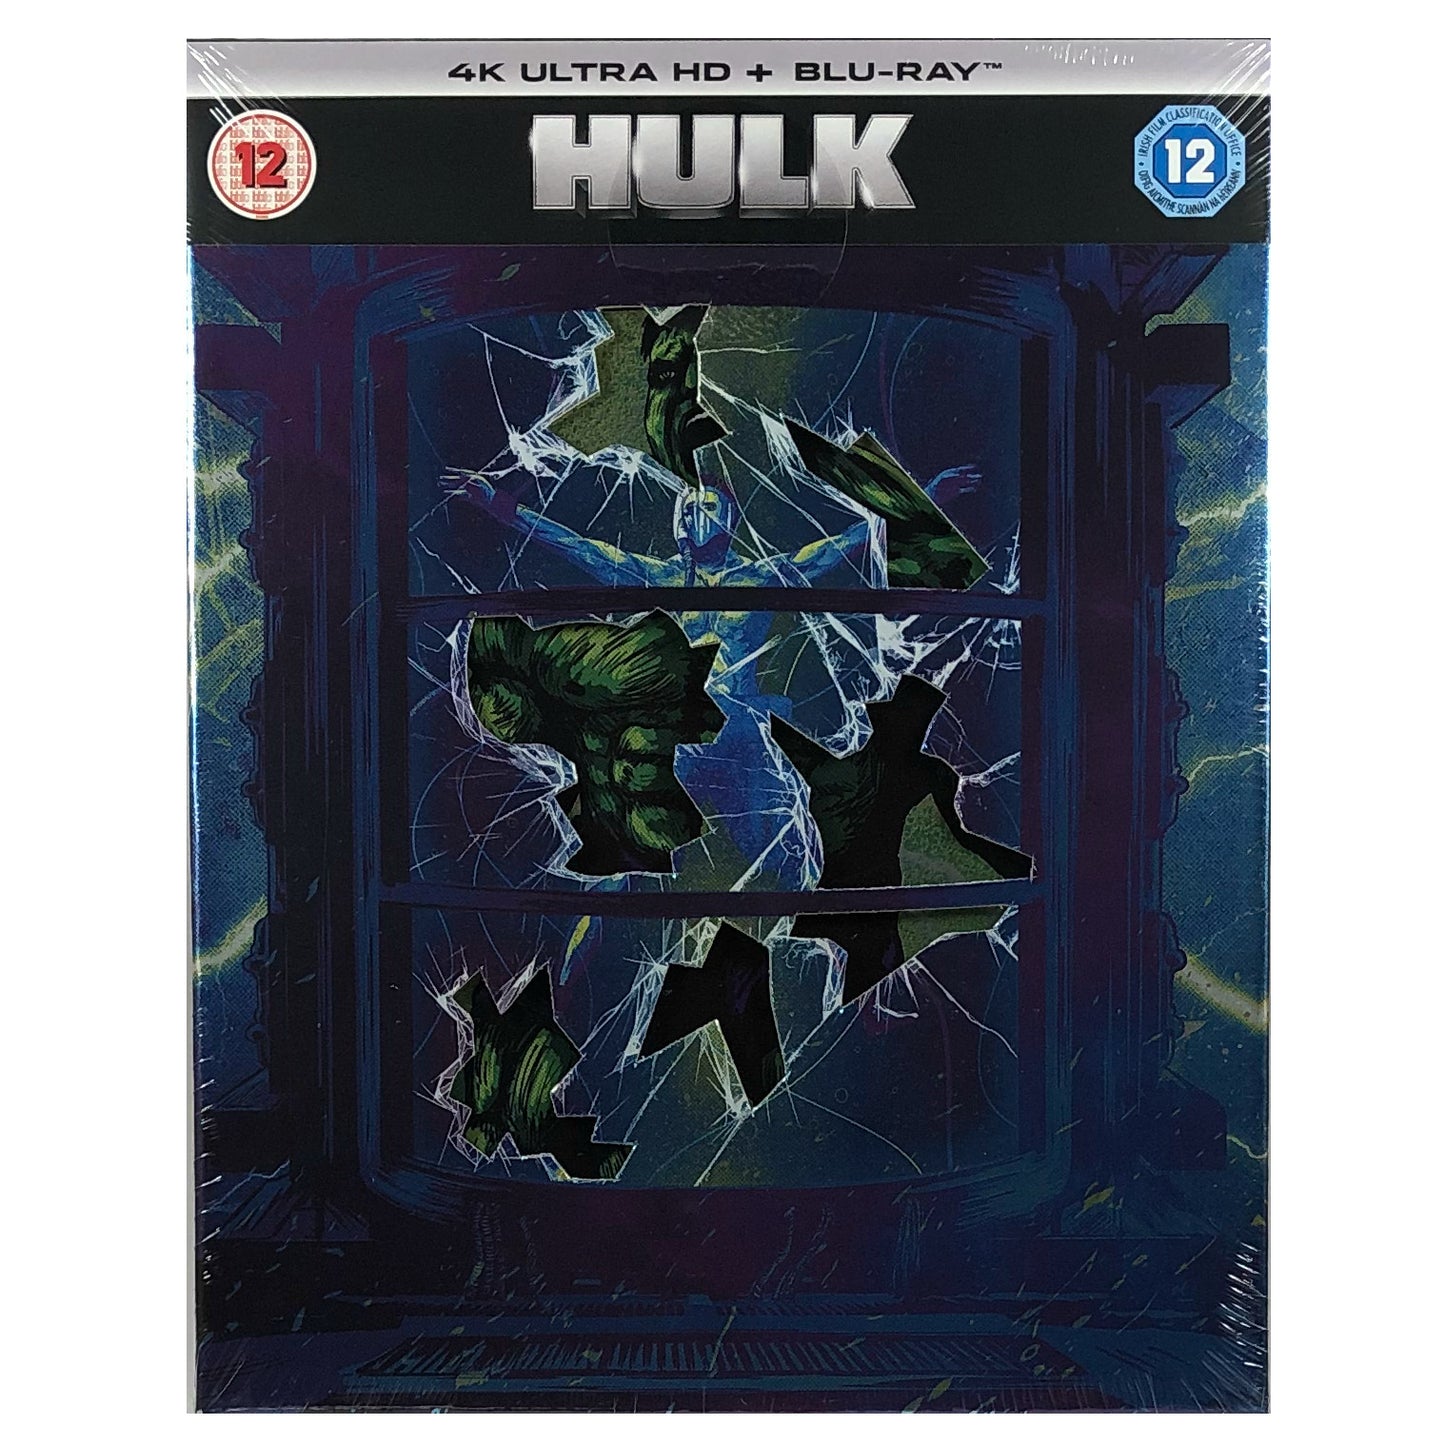 Hulk (2003) 4K Steelbook